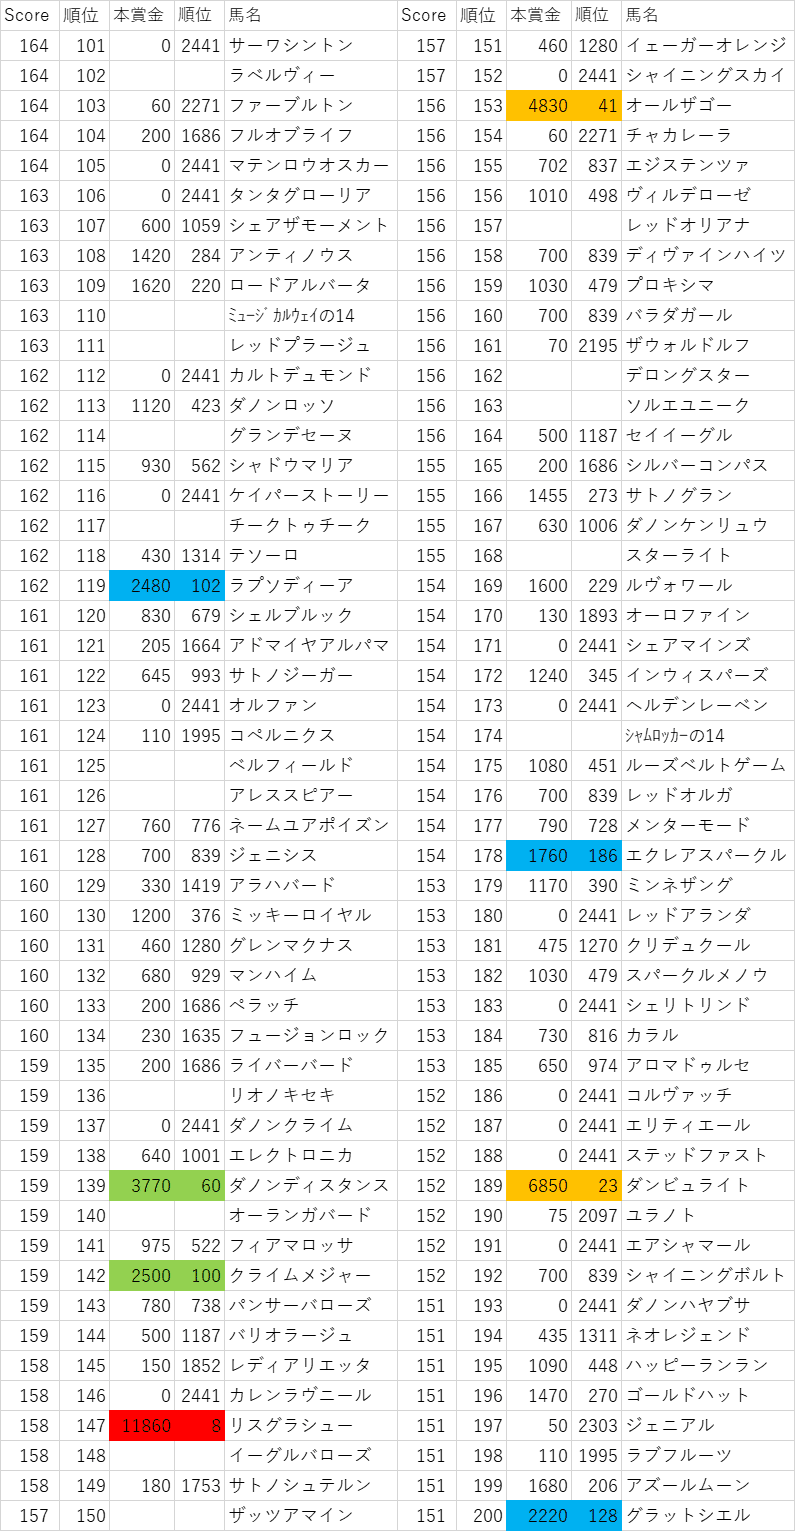 2014年産駒スコア101~200位